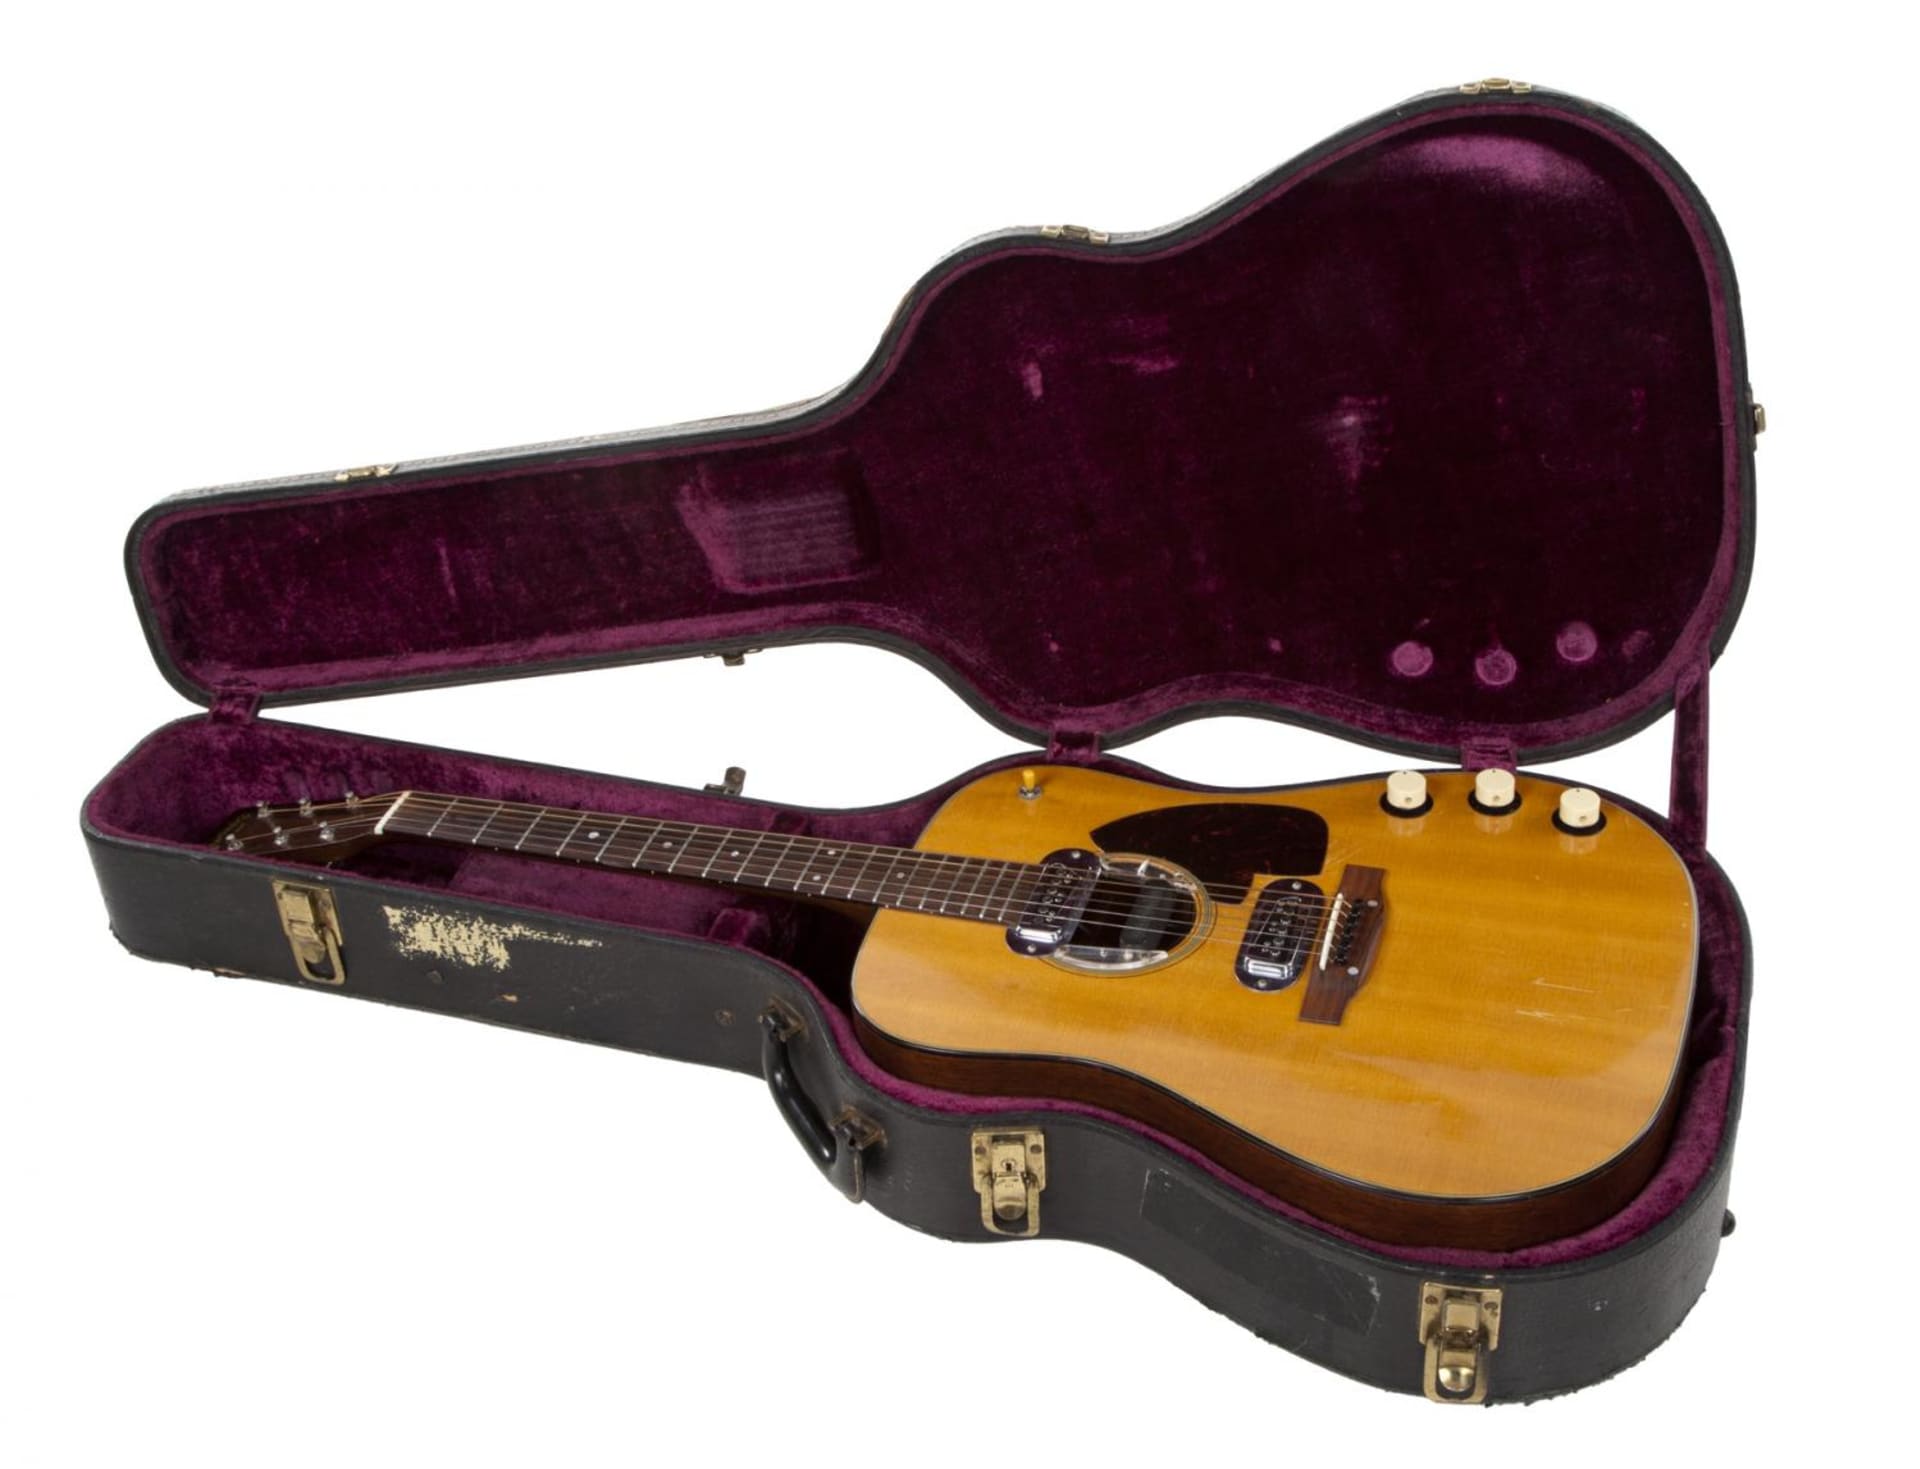 Kytara, která půjde do aukce a na níž hrál Kurt Cobain, je jedním z pouze asi tří stovek vyrobených kusů.